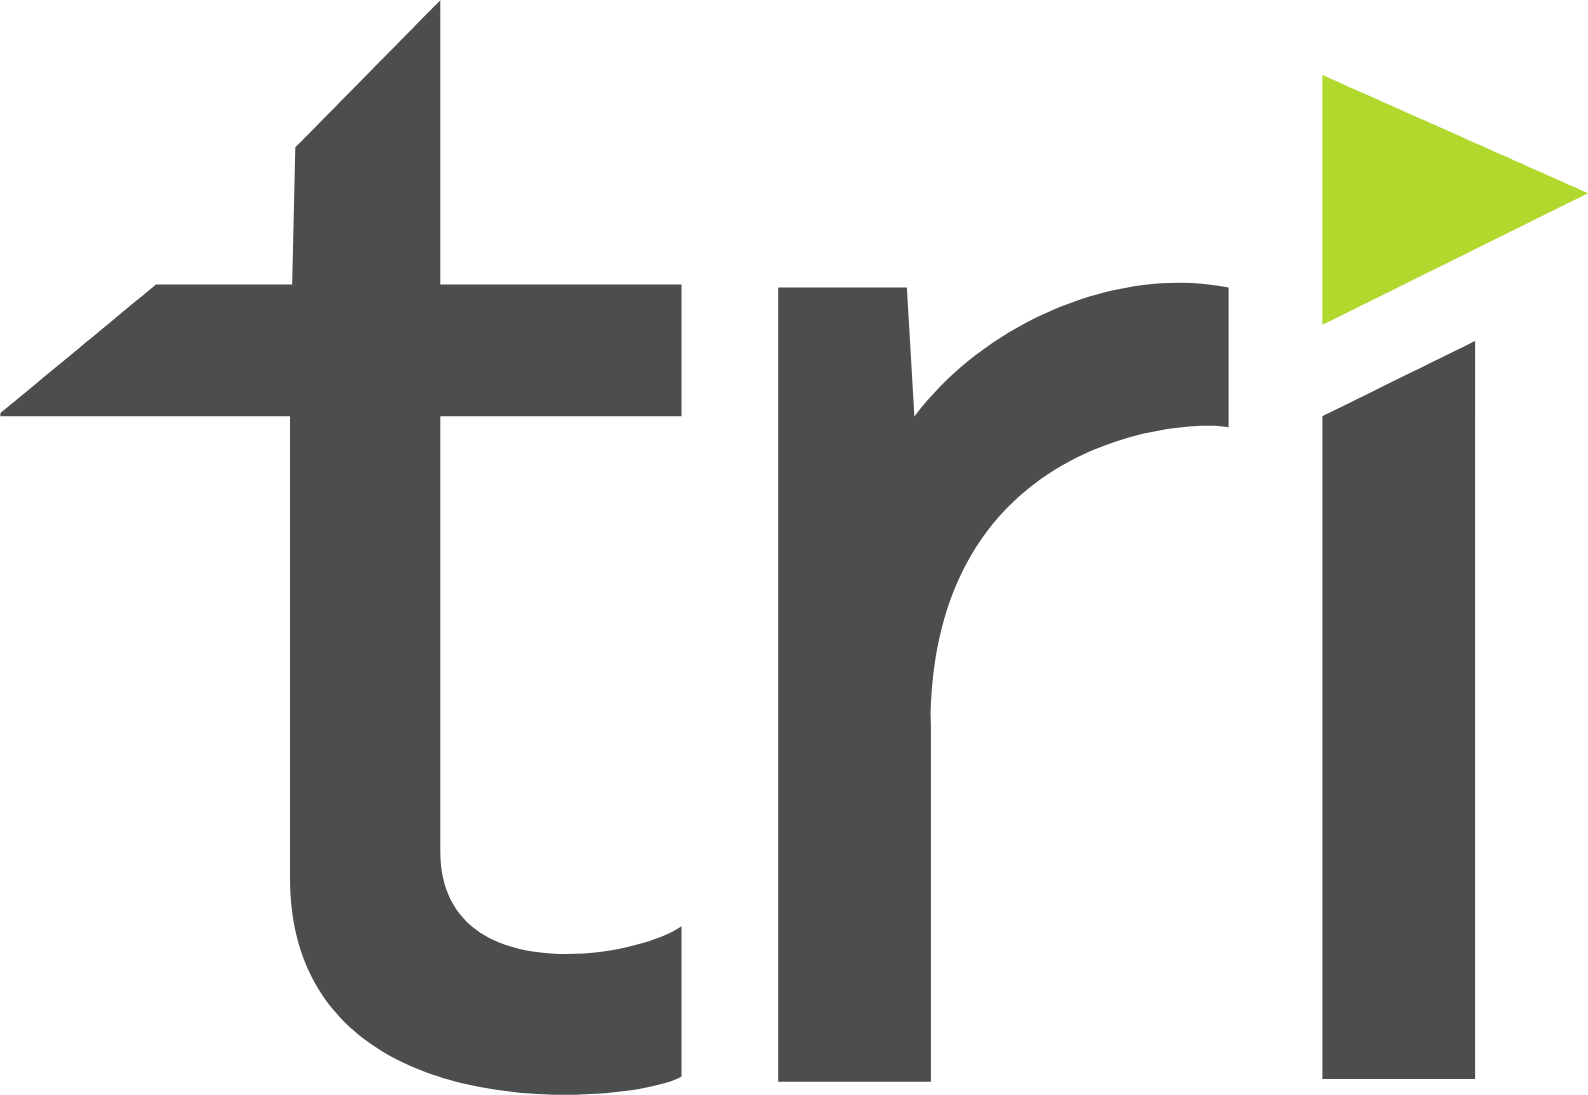 Tri Pointe Homes logo (transparent PNG)